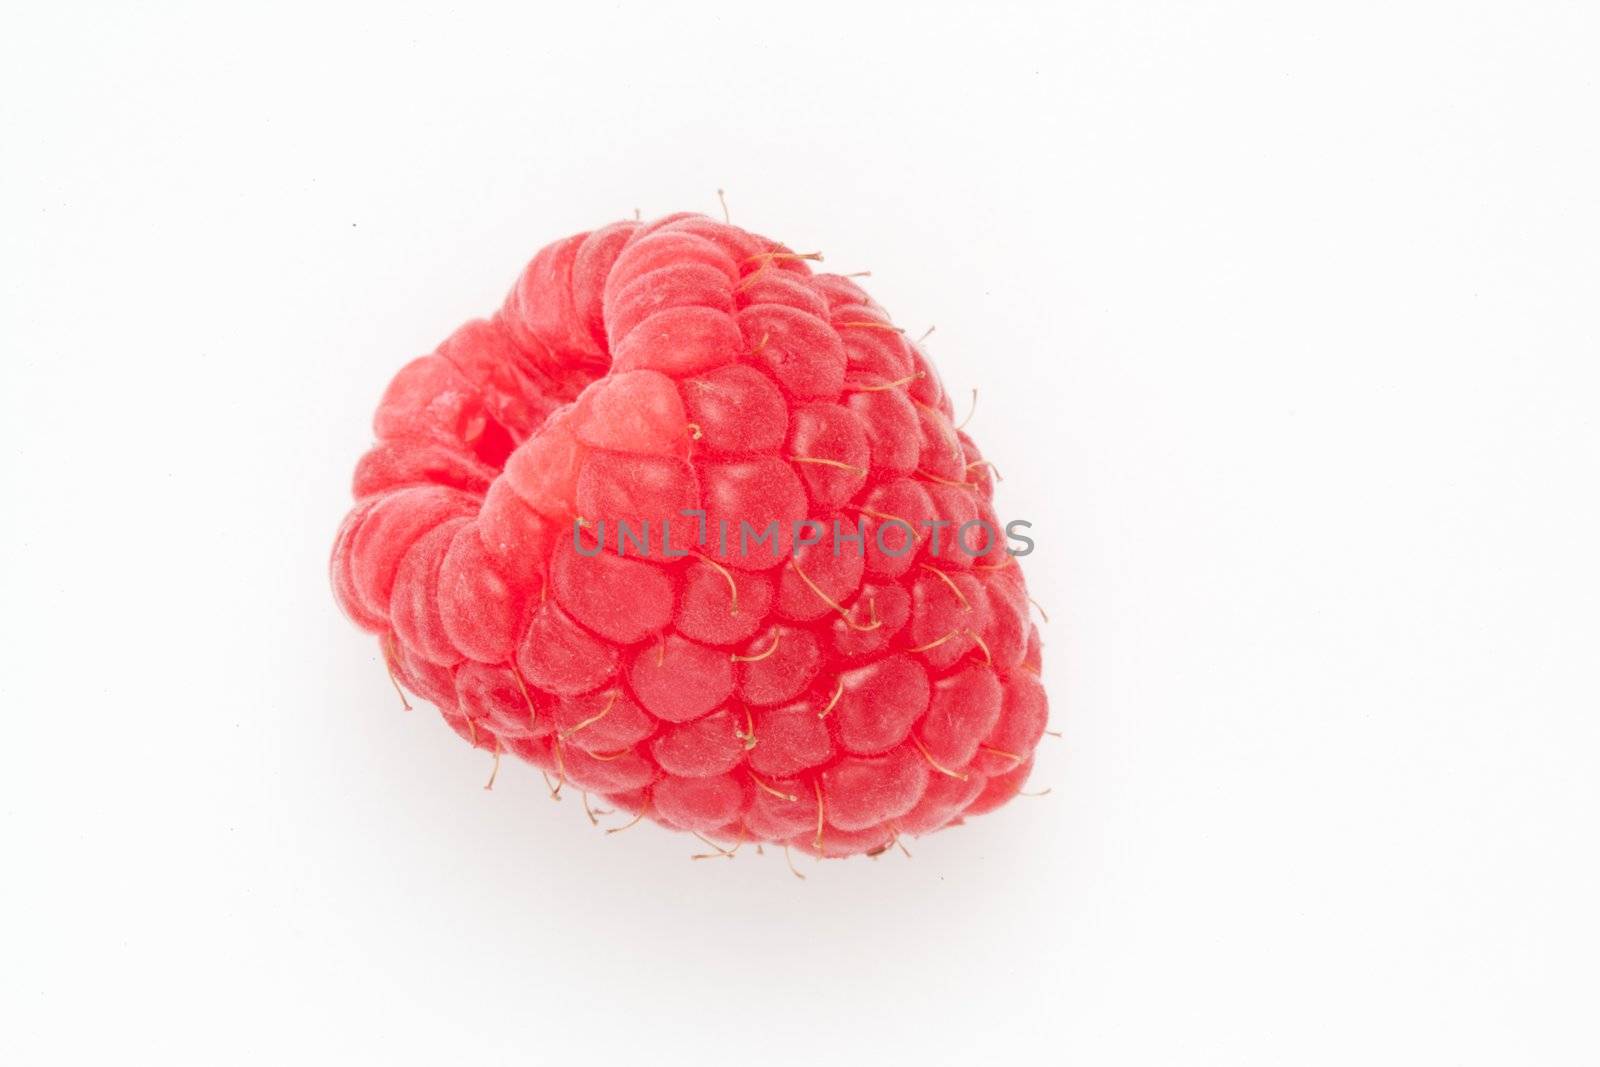 Raspberry by Wavebreakmedia